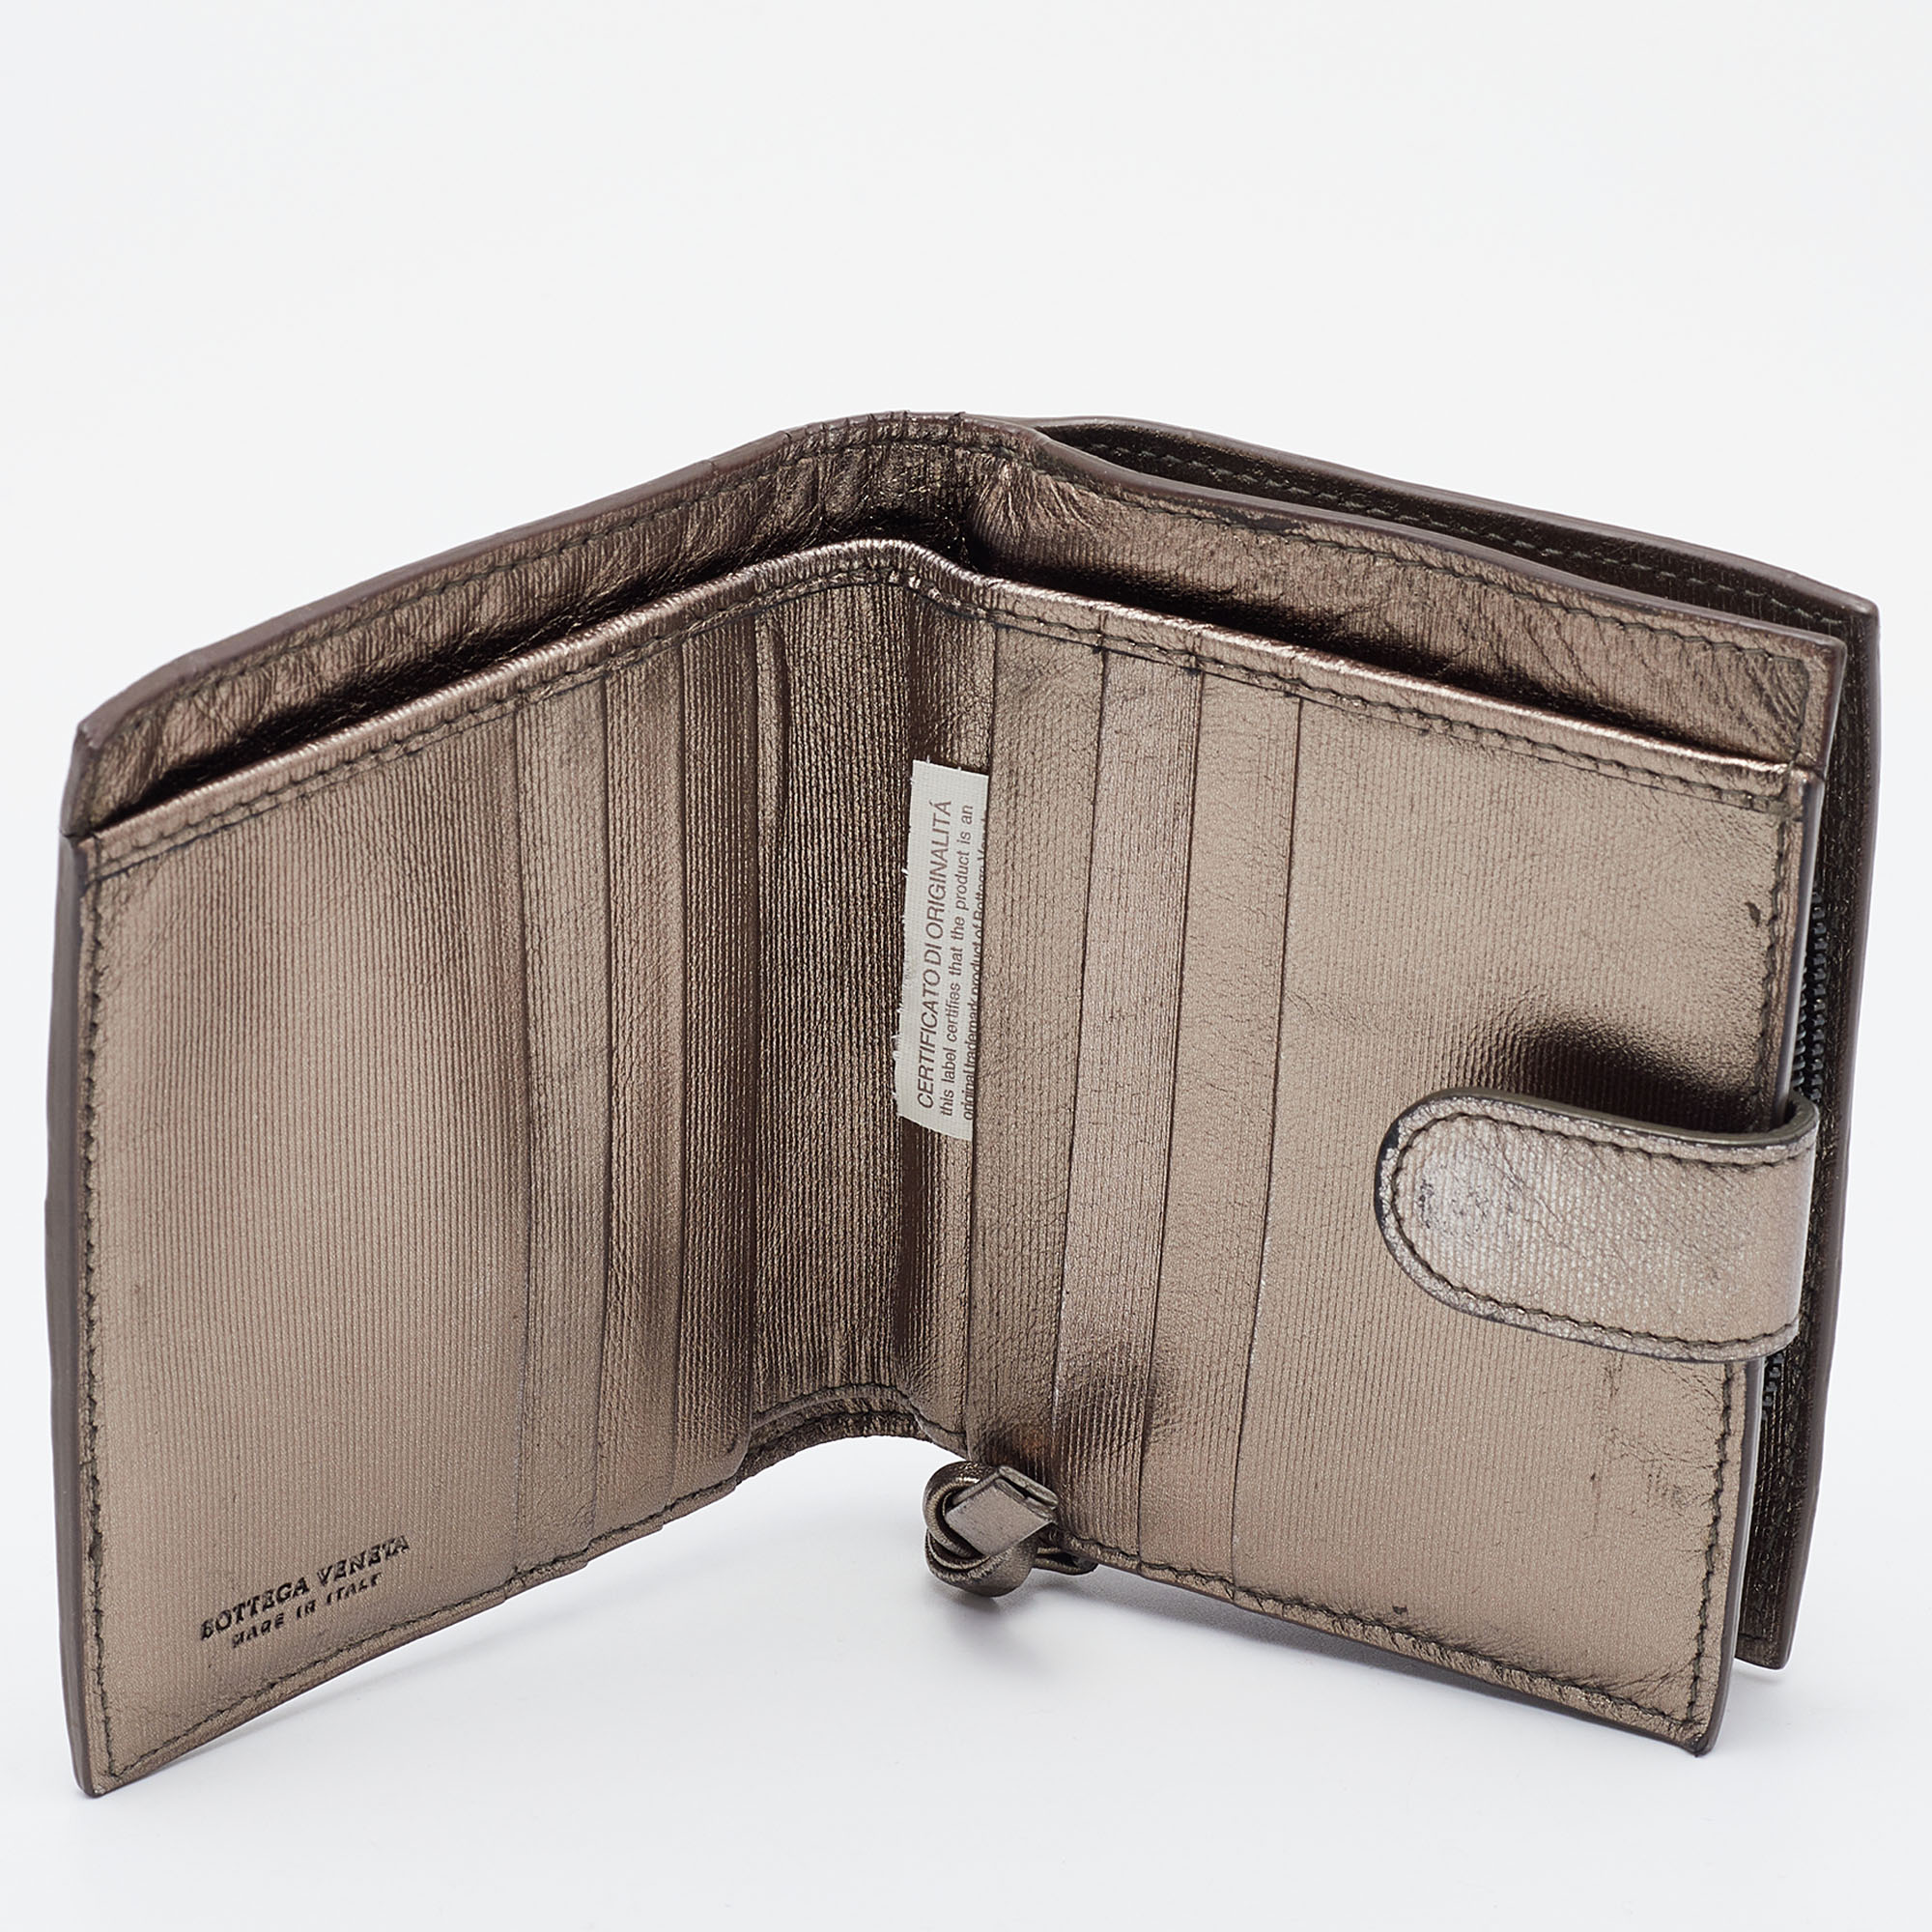 

Bottega Veneta Metallic Intrecciato Leather French Compact Wallet